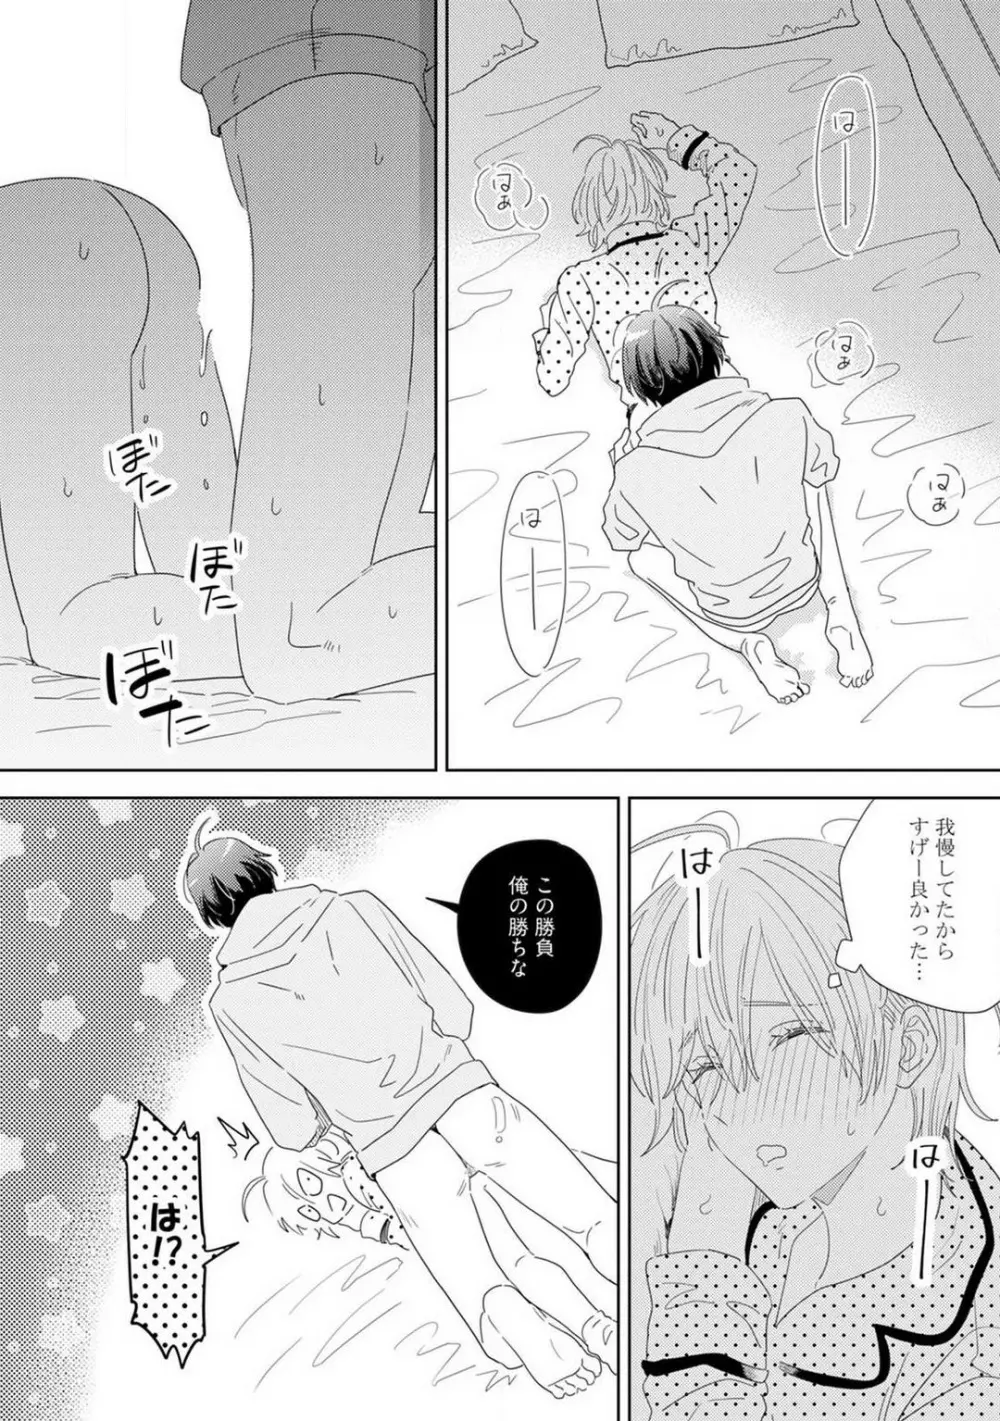 御曹司とヤンキー女のこじらせ恋 1-6 127ページ